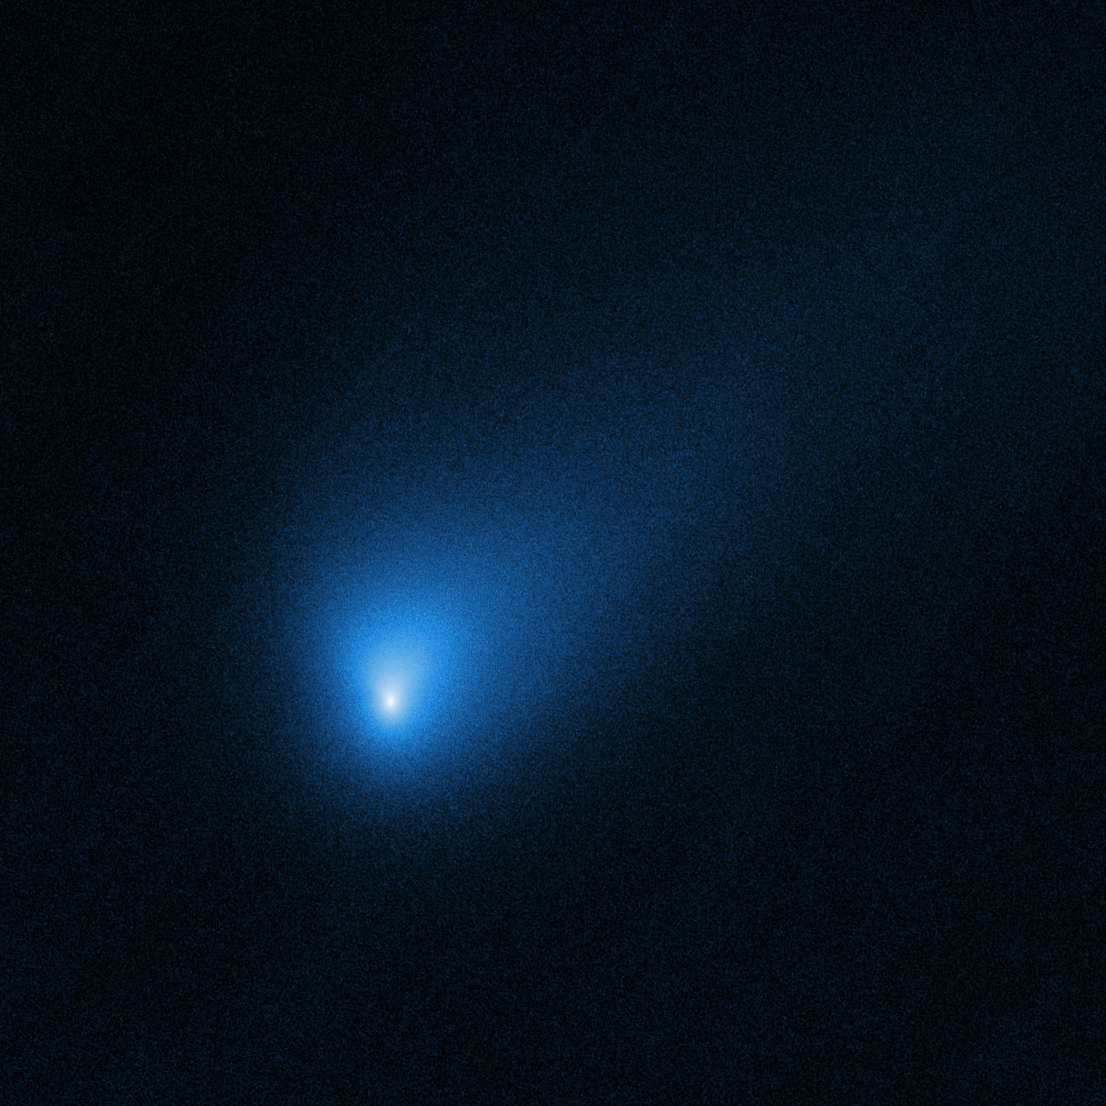 A Nasa поделилось fotos da primeira interestelar cometa